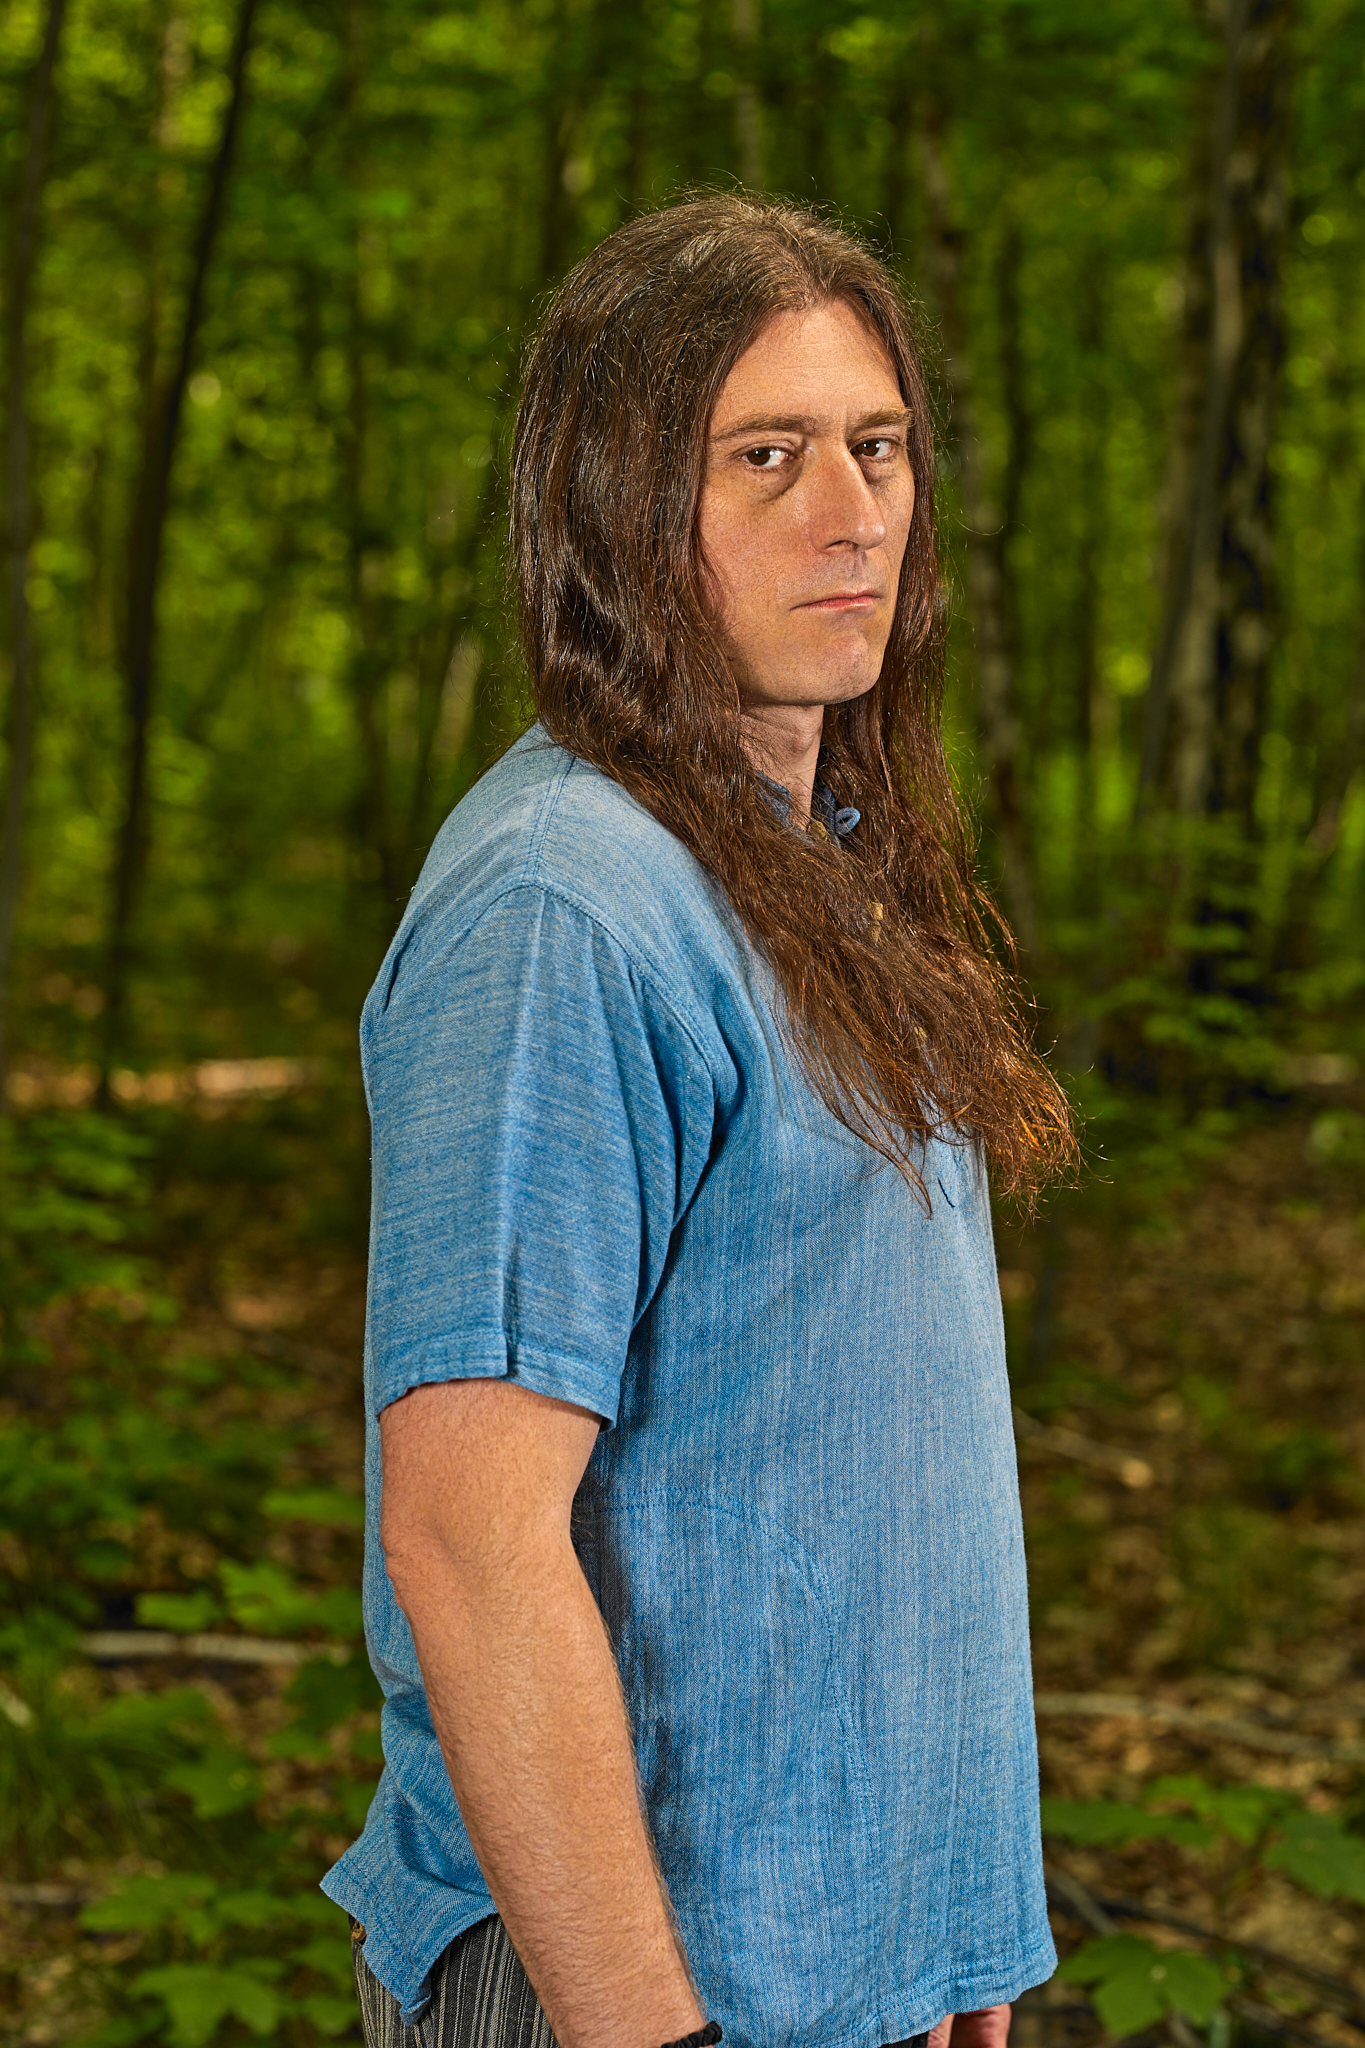 Mężczyzna na tle lasu. Aktor w długich, brązowych włosach. Ubrany w lnianą, niebieską koszulę z krótkim rękawem.